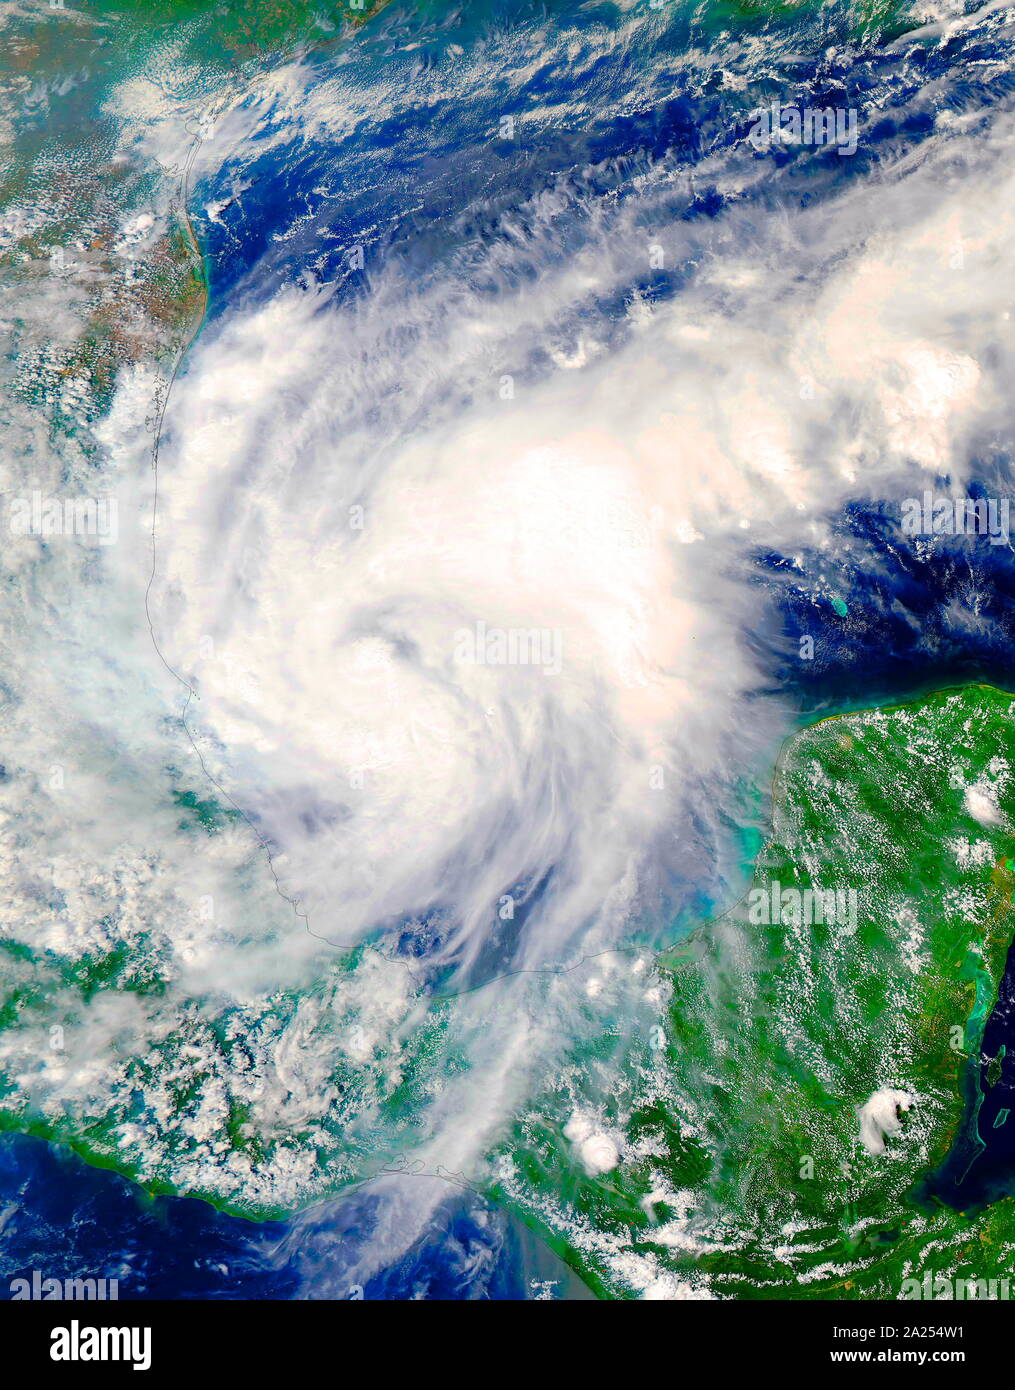 Le satellite Terra de la NASA, capturent une image en lumière visible, de l'Ouragan Katia, dans le sud-ouest du golfe du Mexique. Septembre 2017 Banque D'Images